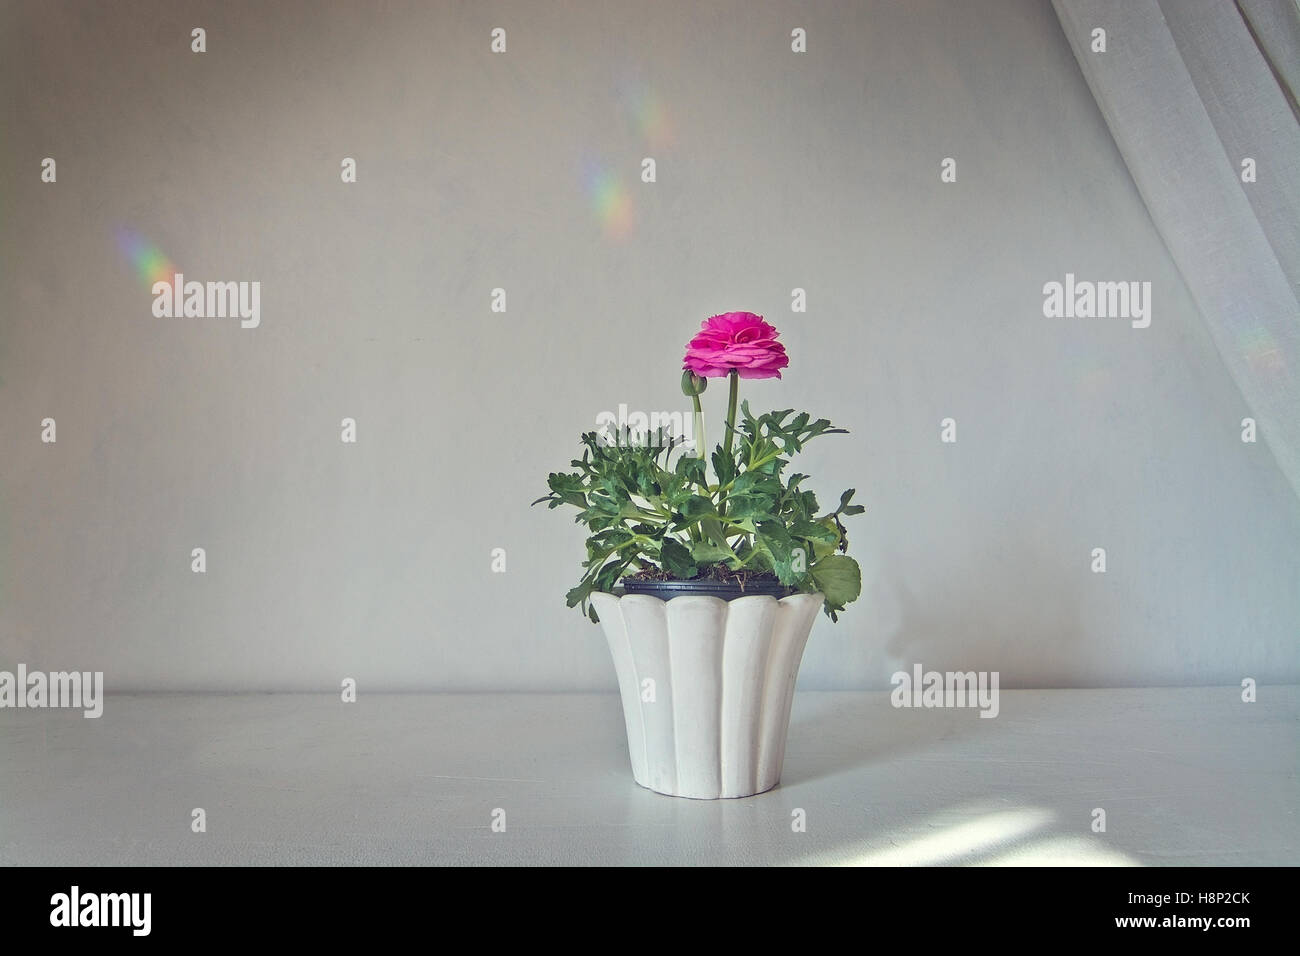 Rosa Ranunkeln Blume im Topf mit weißen Leinen Tuch gegen weiße Wand mit Regenbogen Reflexionen Stockfoto